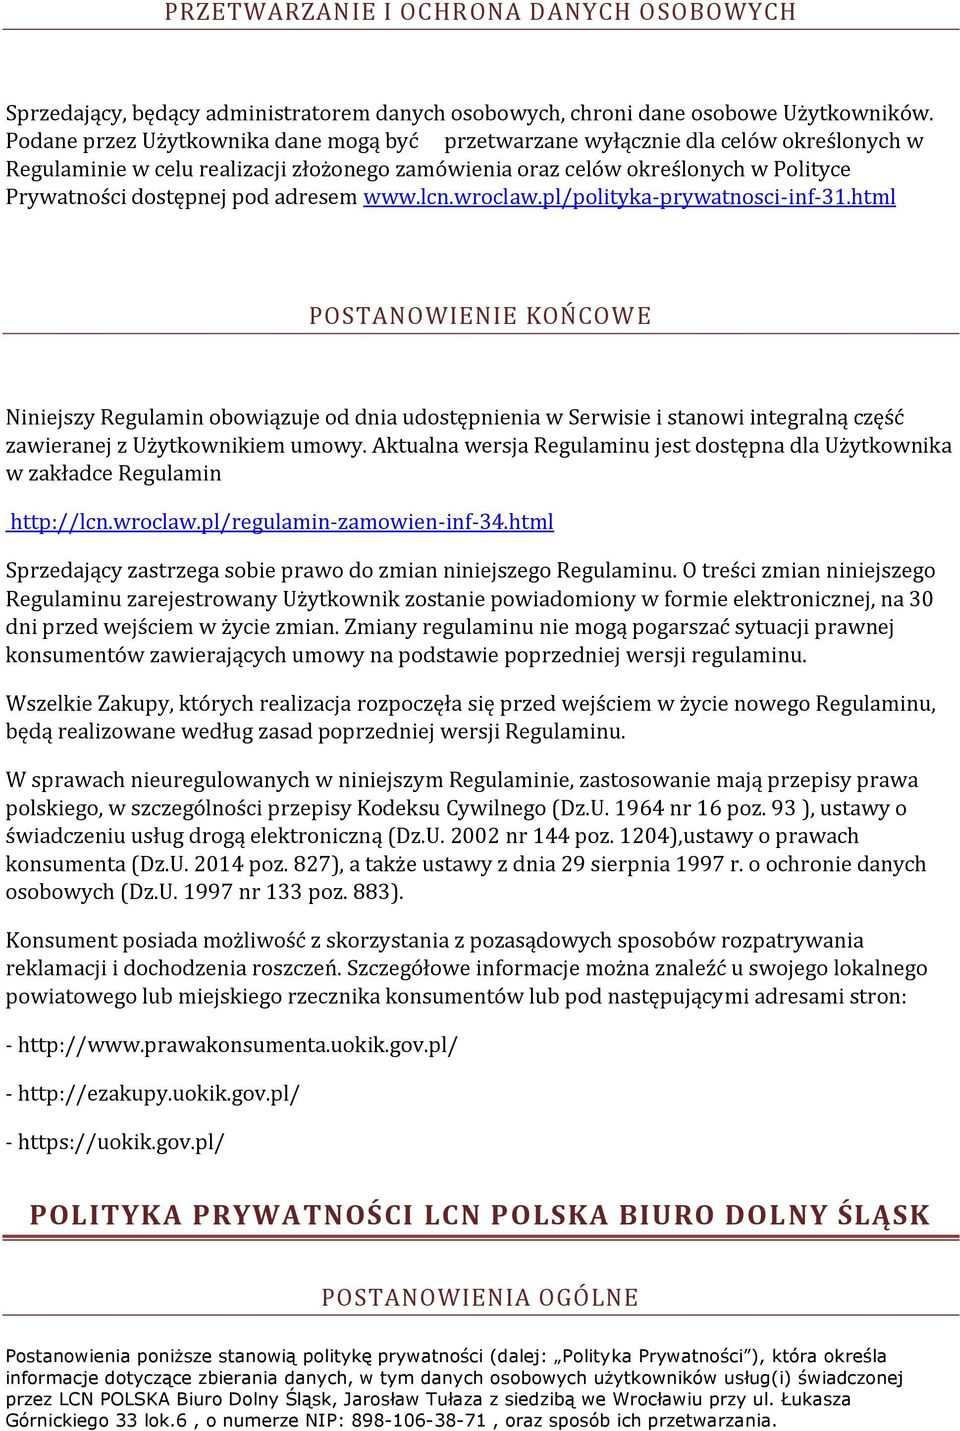 adresem www.lcn.wroclaw.pl/polityka-prywatnosci-inf-31.